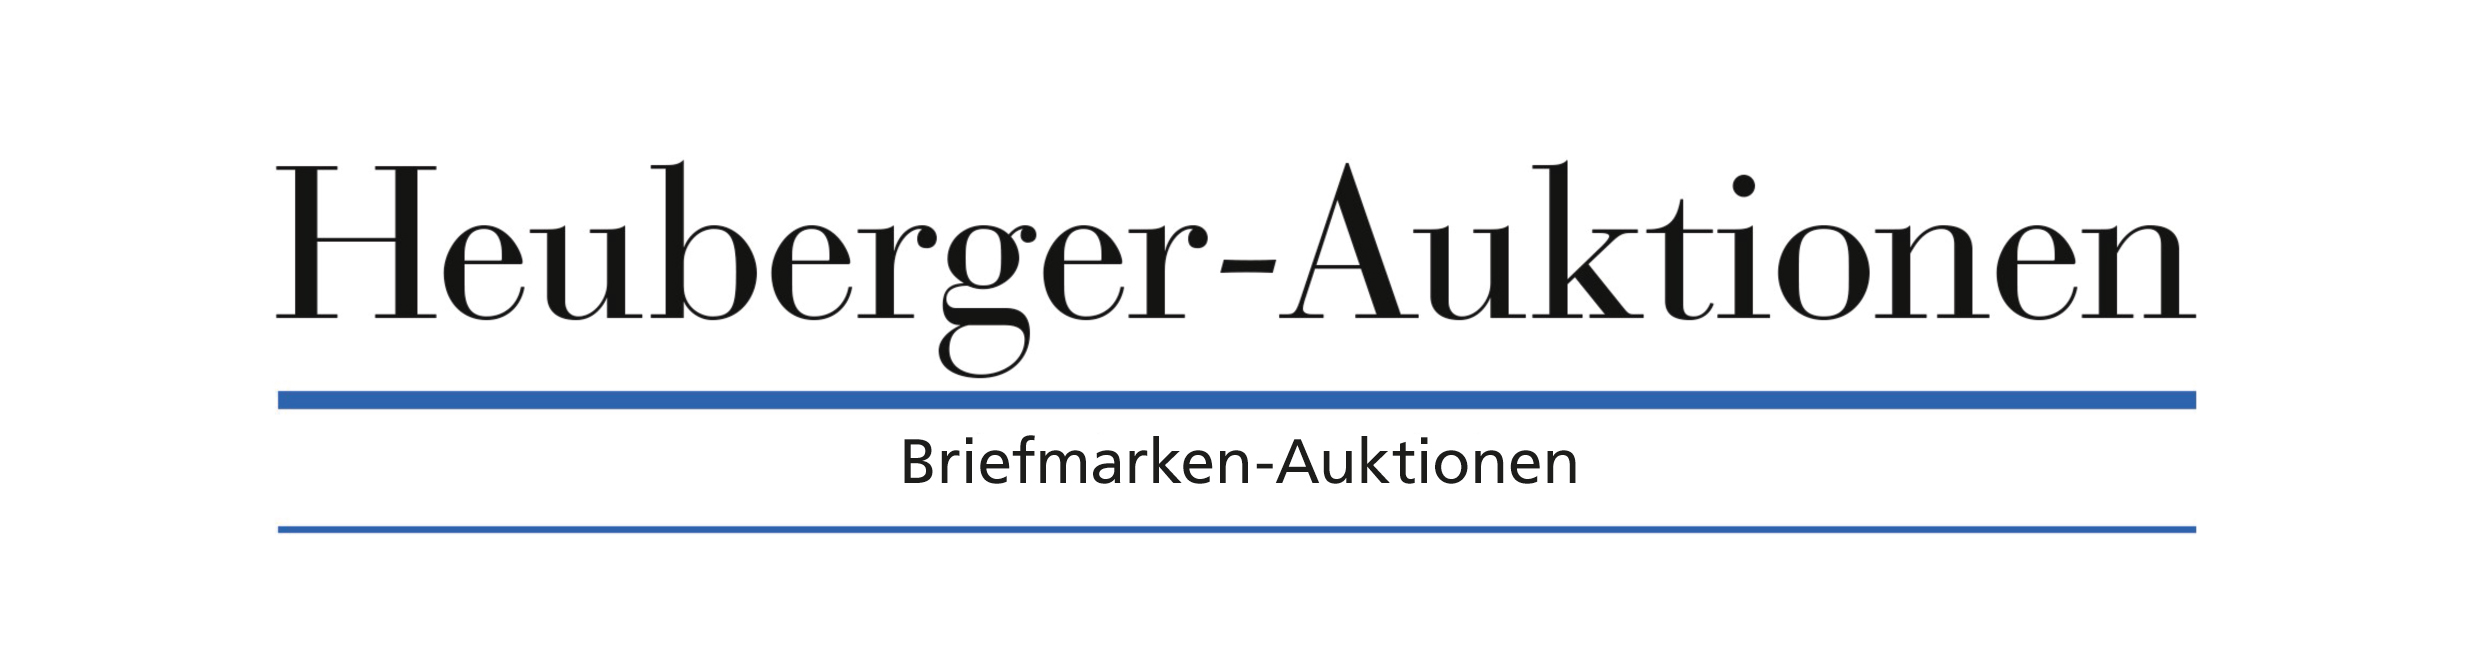 logo-heuberger2022.jpg